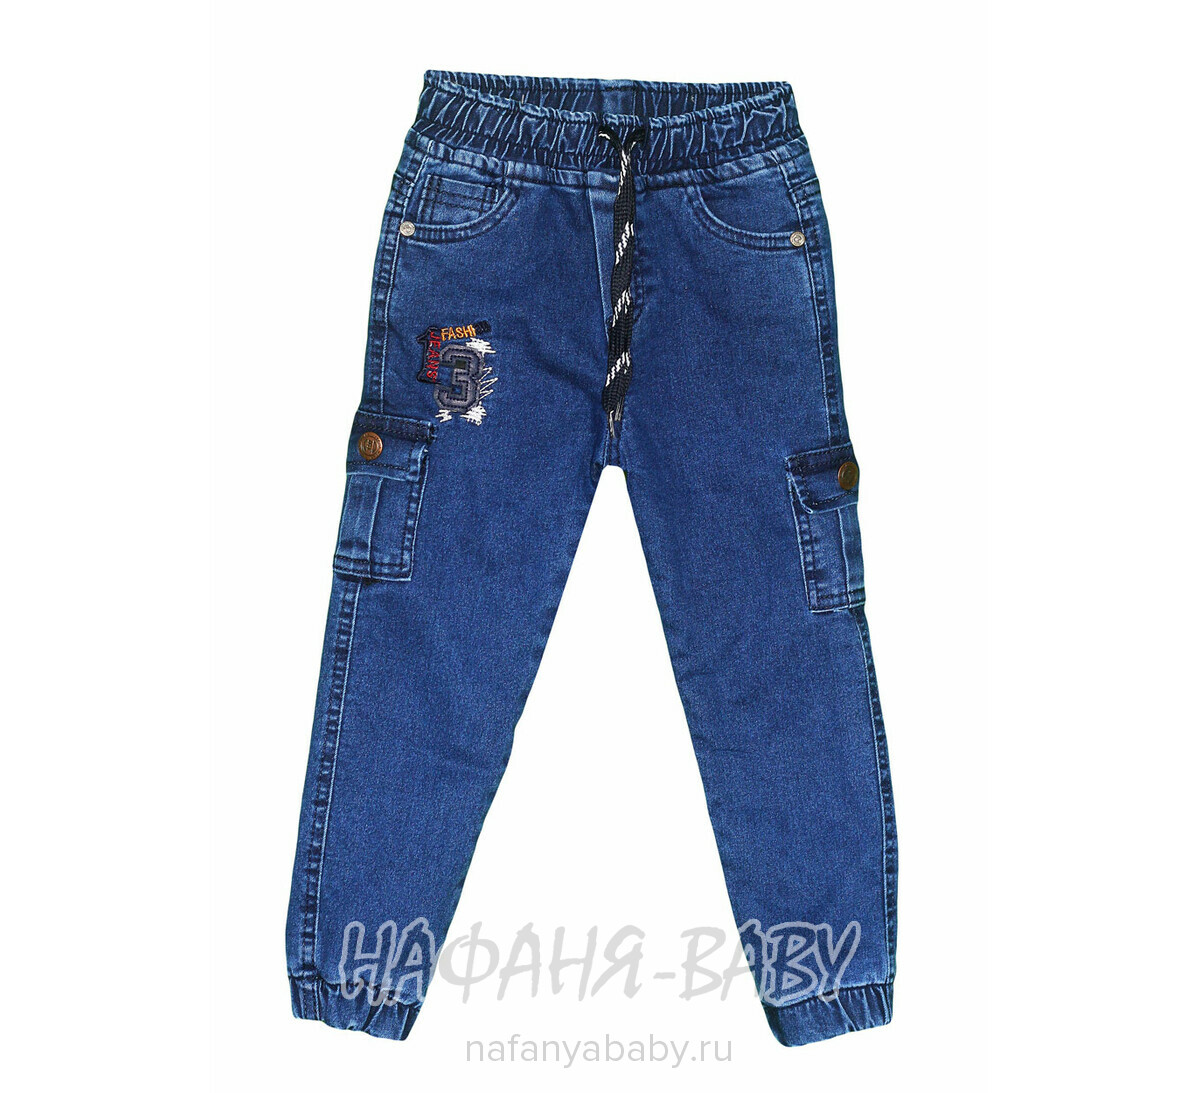 Теплые джинсы на флисе HIWRO, купить в интернет магазине Нафаня. арт: 3040.